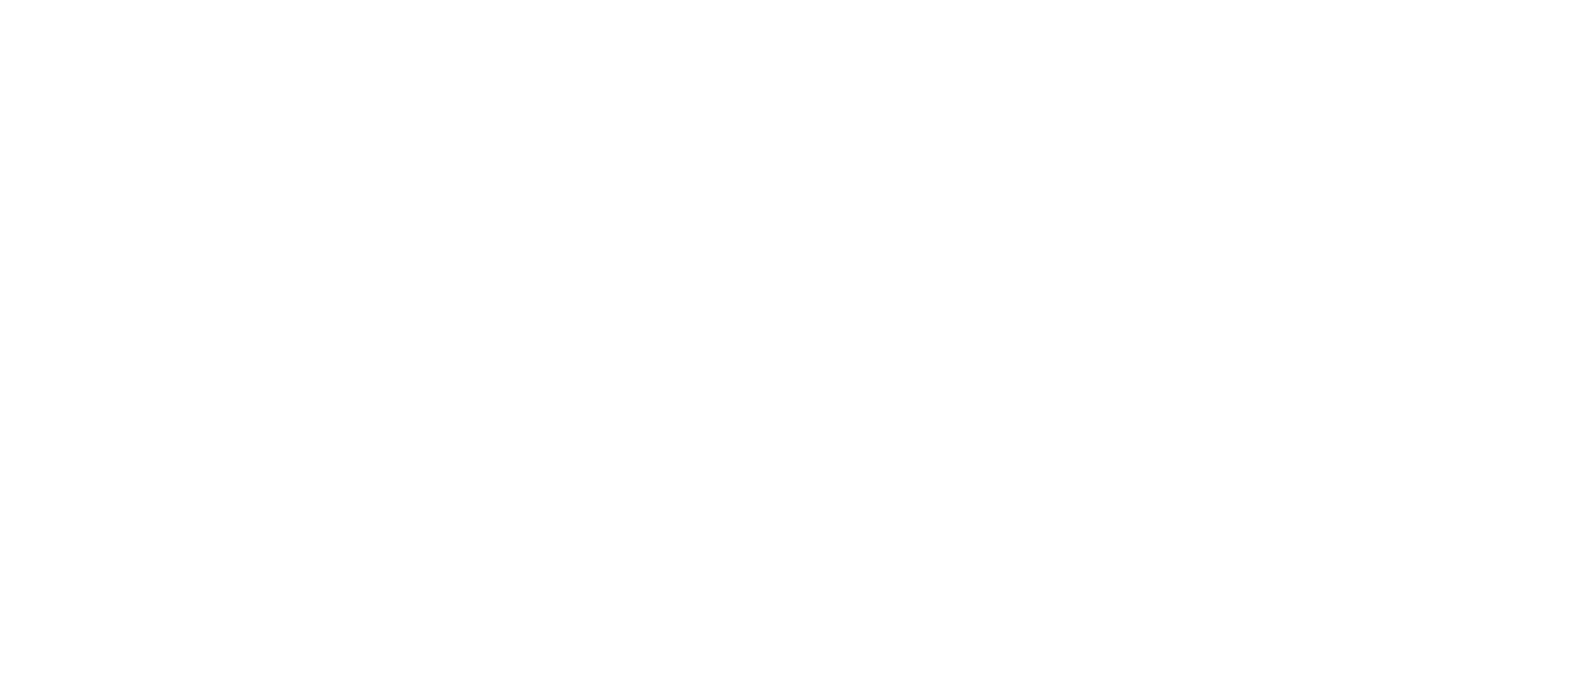 PBBank (Public Bank Bhd) logo grand pour les fonds sombres (PNG transparent)